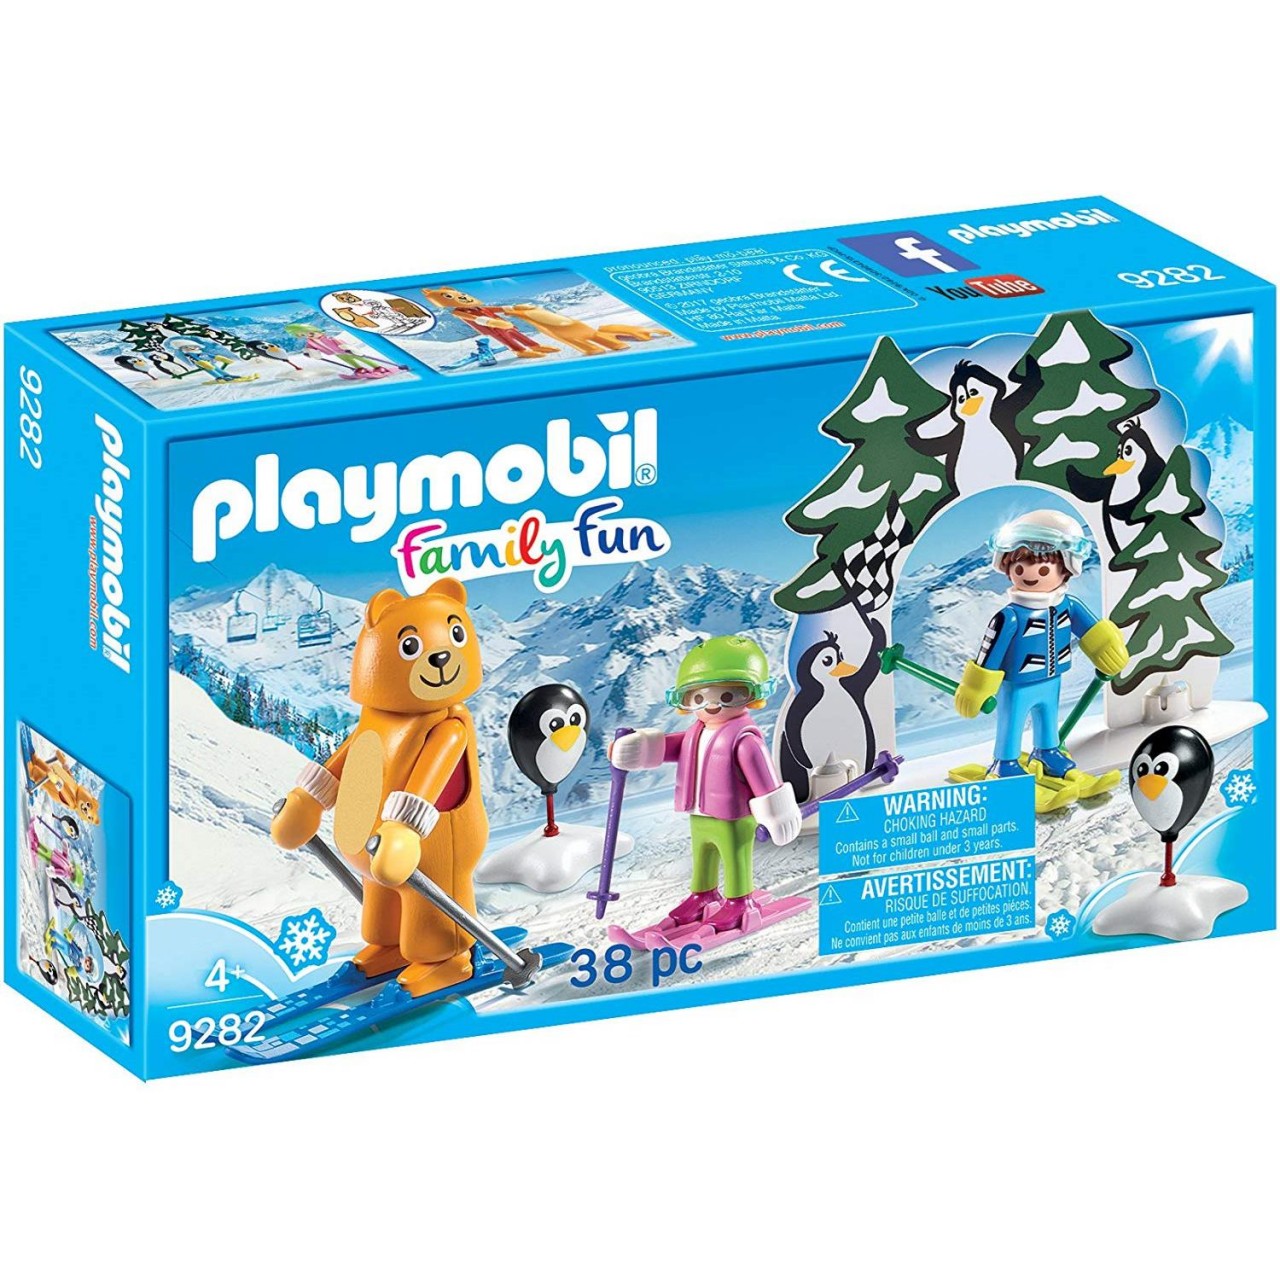 Playmobil 9282 Skischule